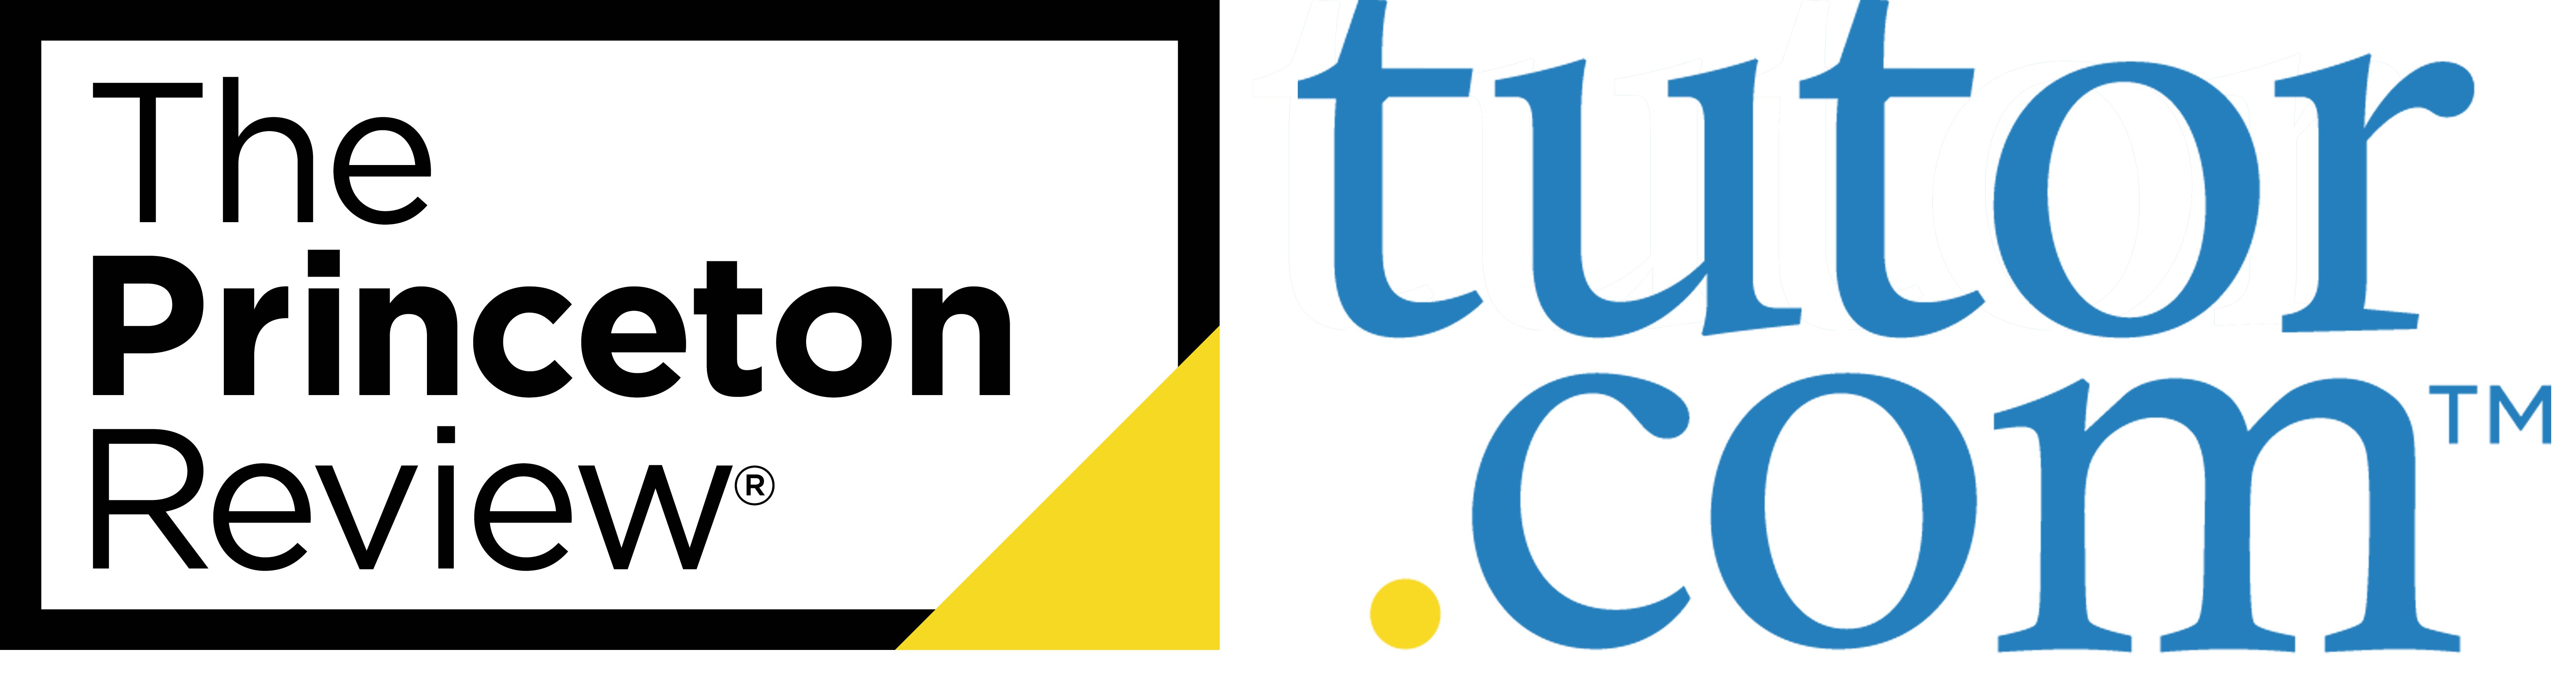 Logo saying, “The Princeton Review® | Tutor.com”